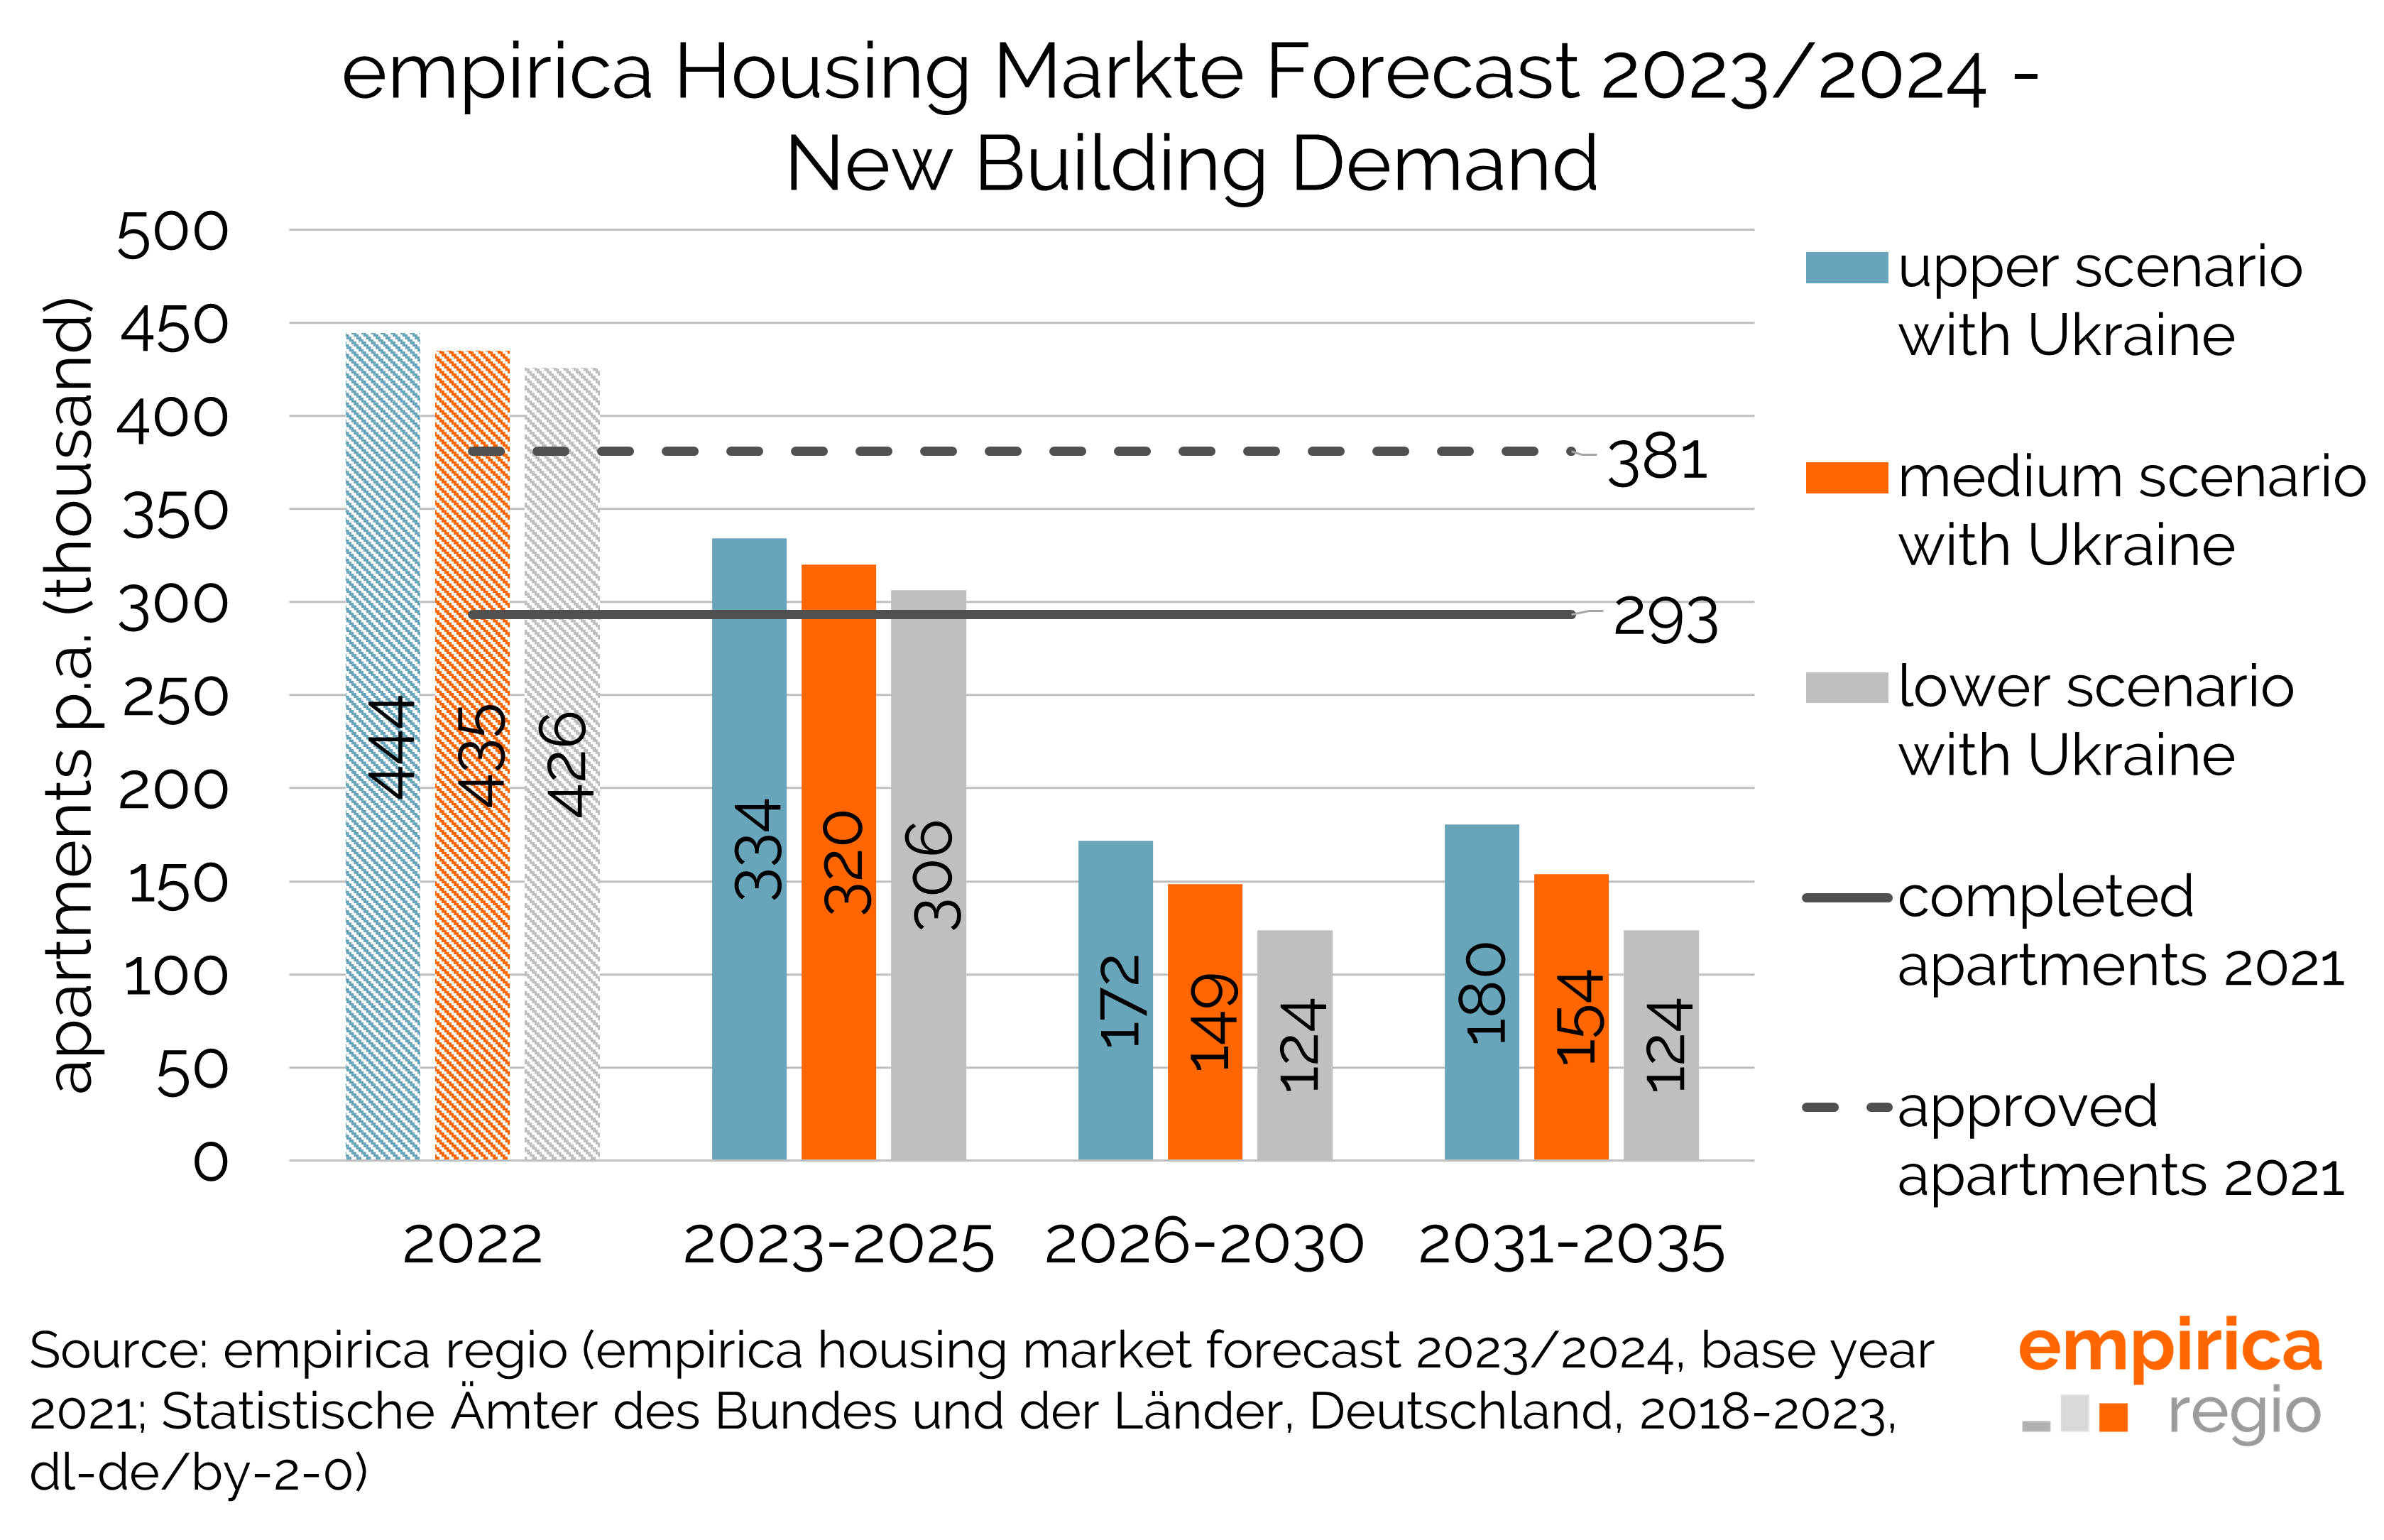 empirica Housing Market Forecast 2023/2024 - Three Scenarios in Comparison